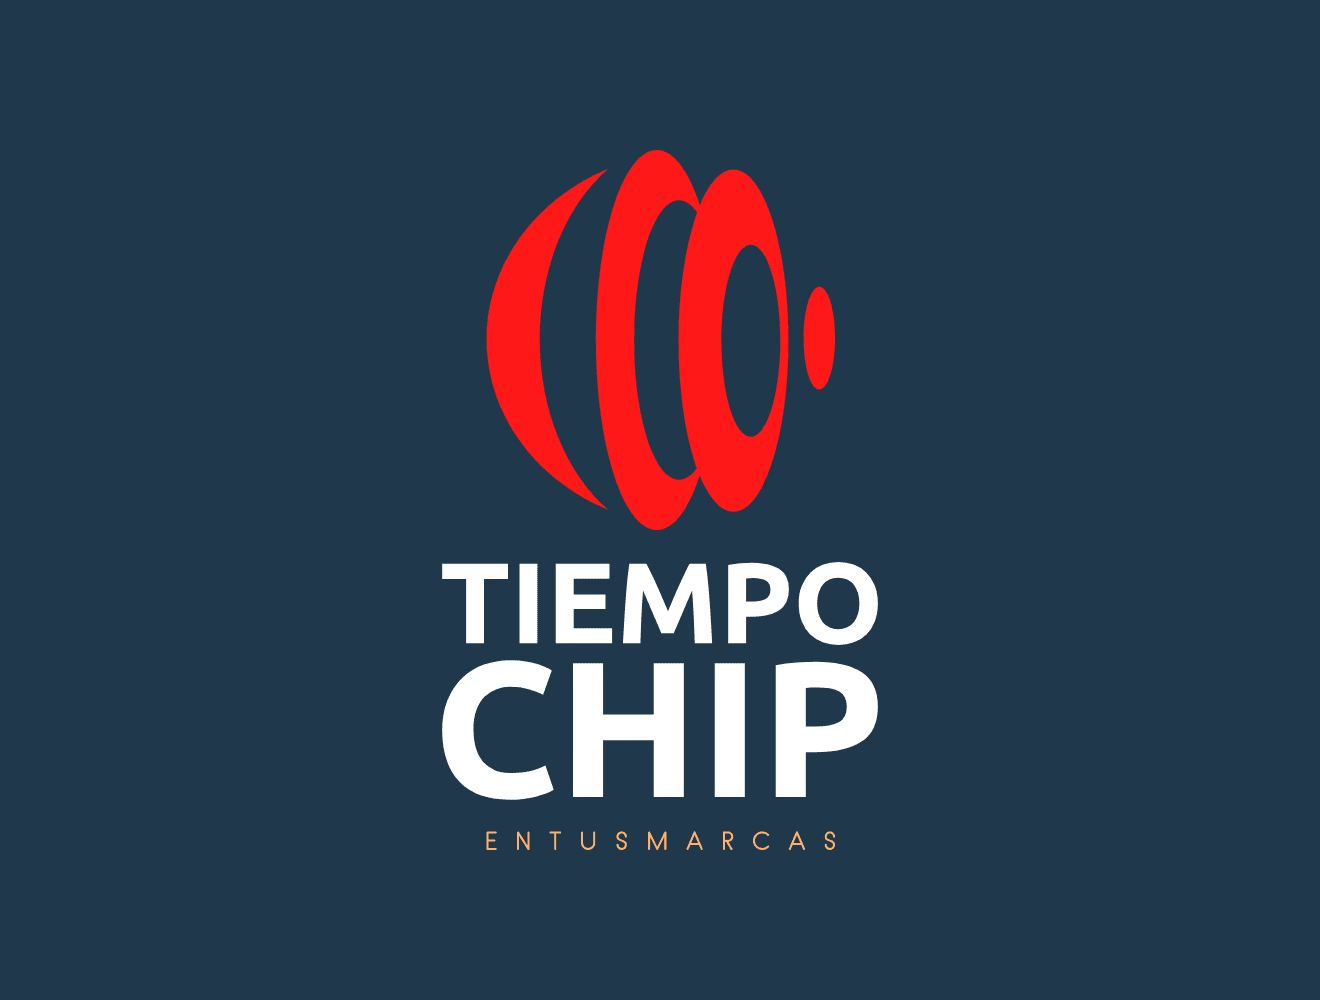 (c) Tiempochip.com